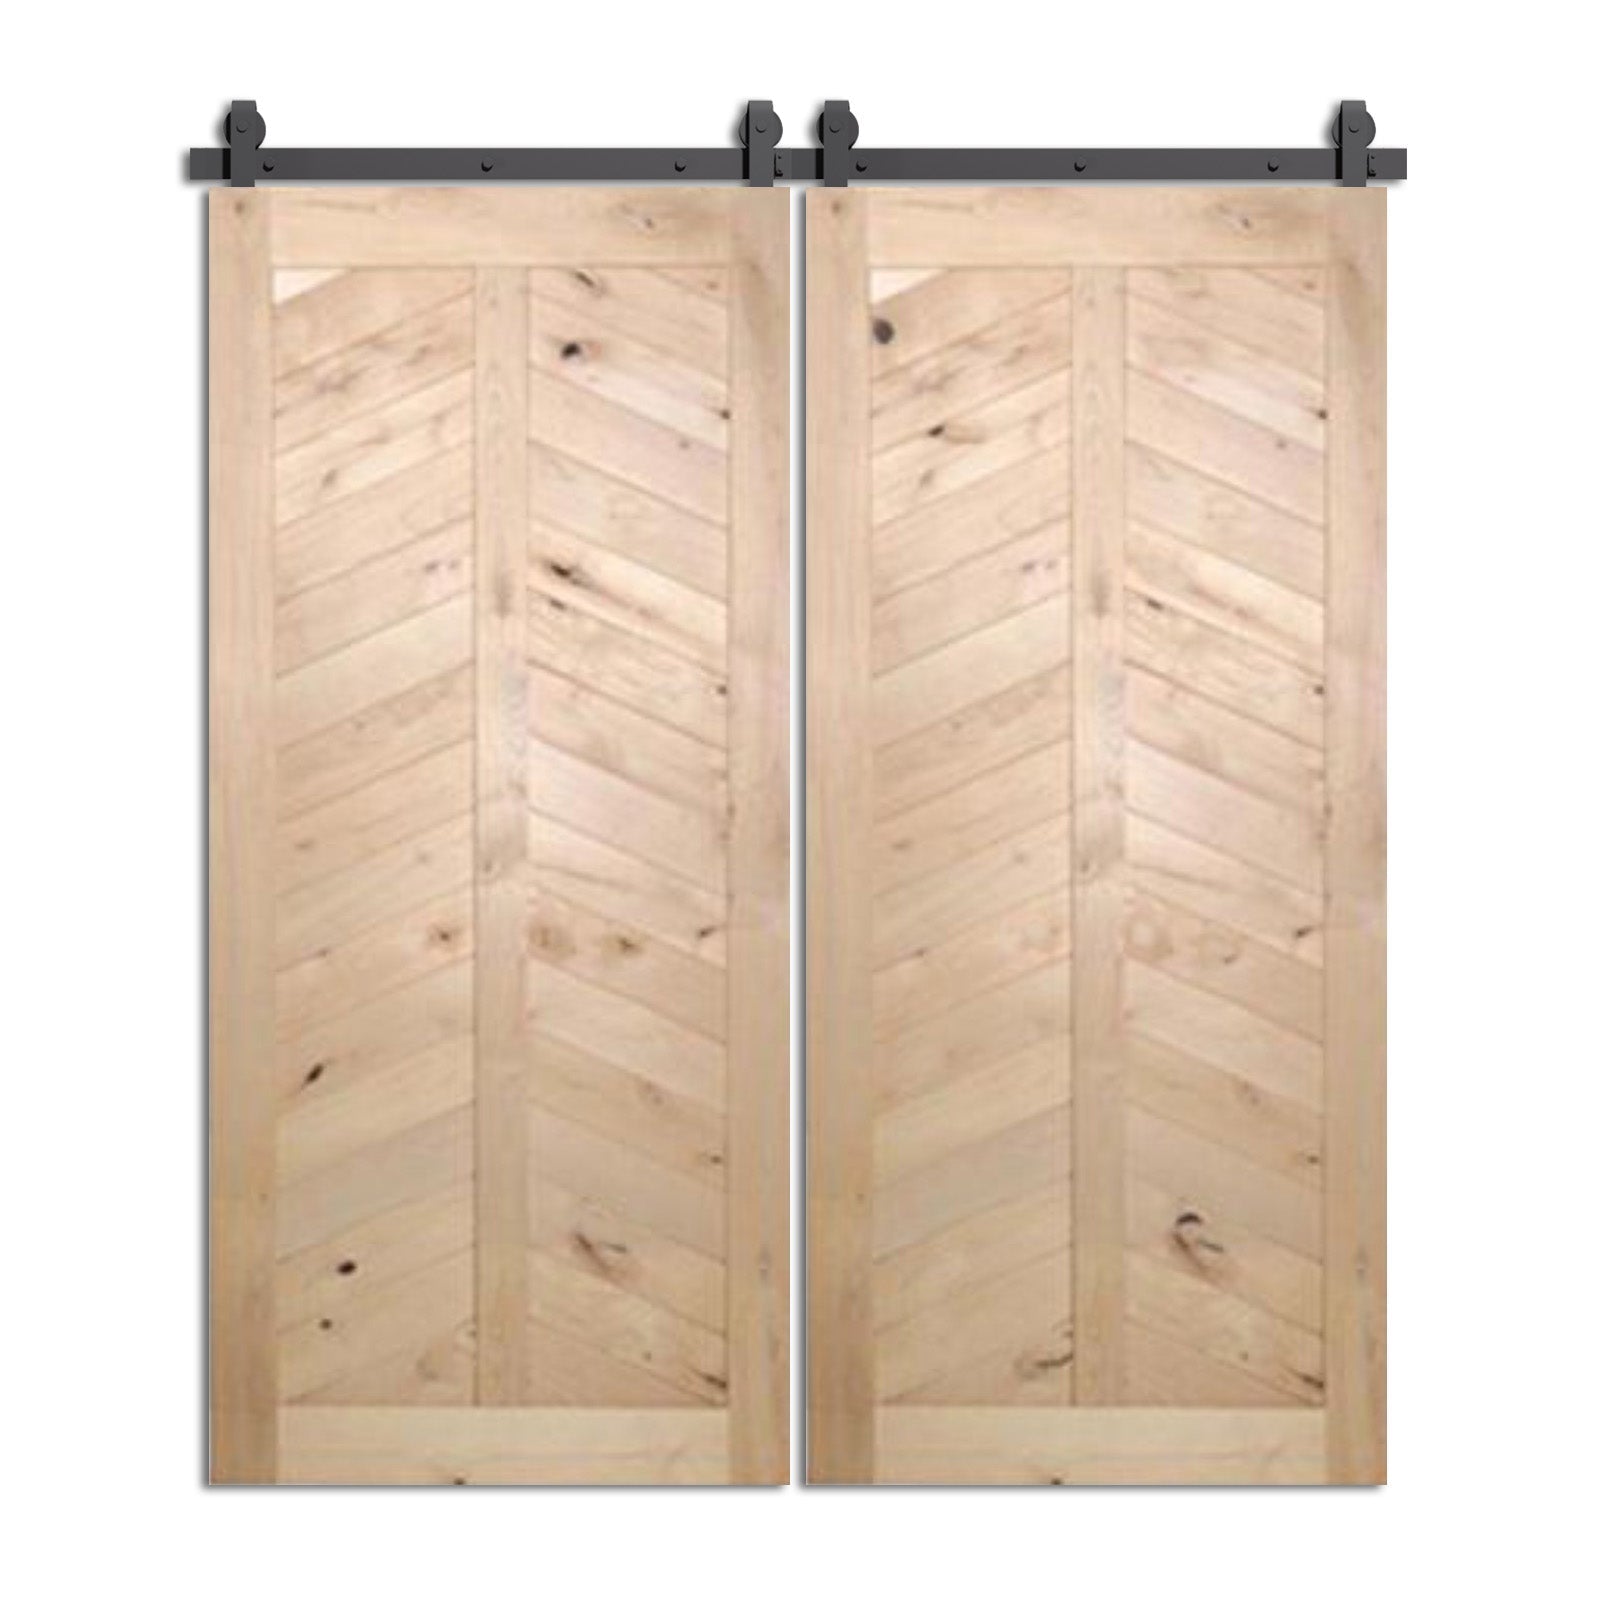 Timberpeak - Two Panel Arrow Design Sliding Double Barn Door